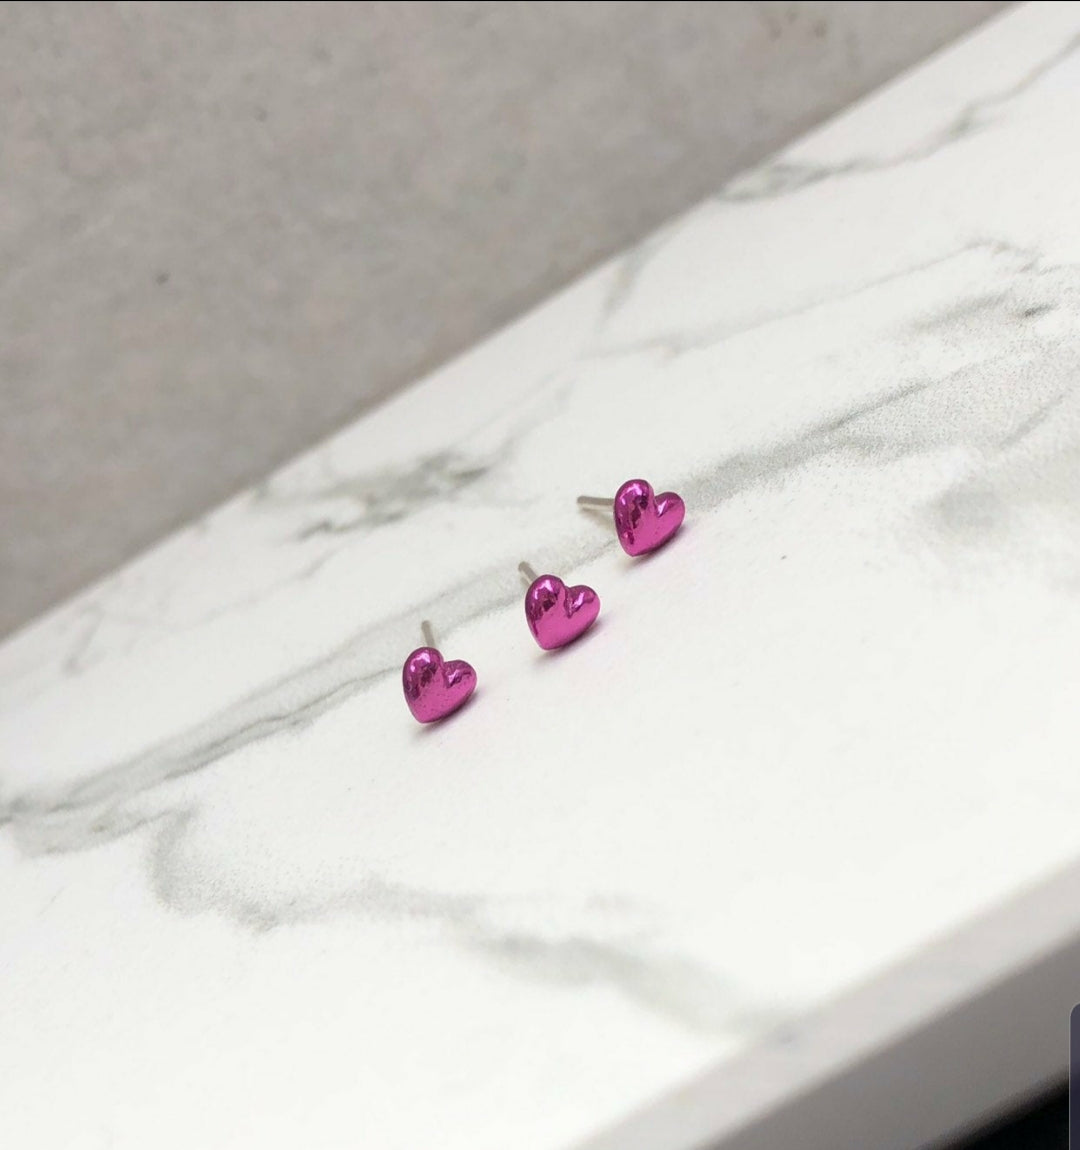 Black Jewelry|stainless Steel Heart Stud Earrings - Black Hollow Earring  For Women